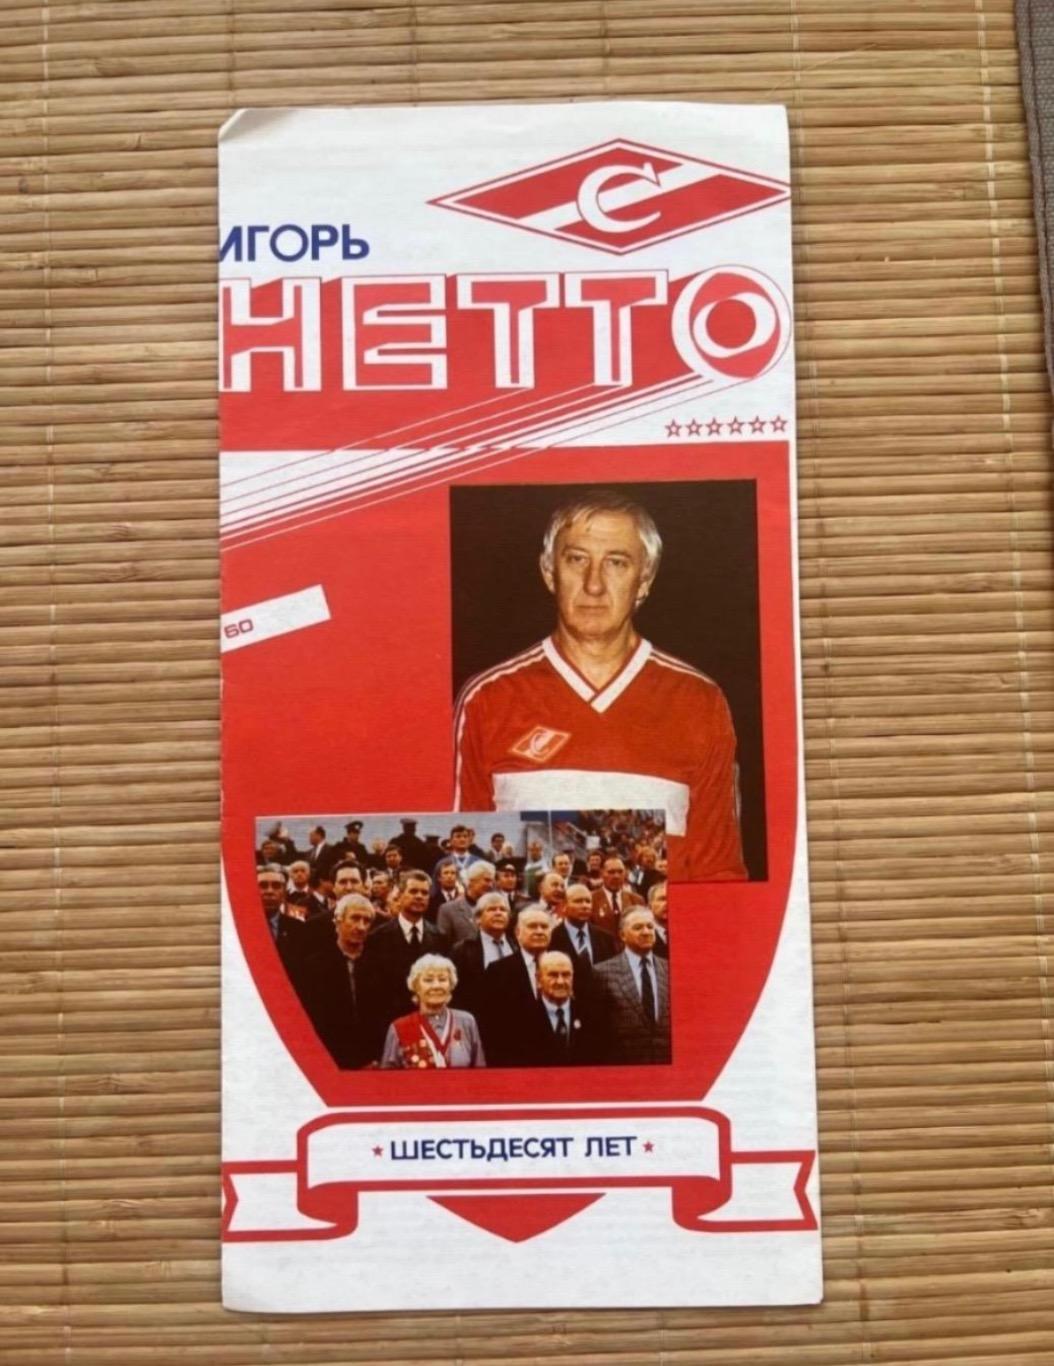 Игорь Нетто 60 лет Спартак 1990. Программка